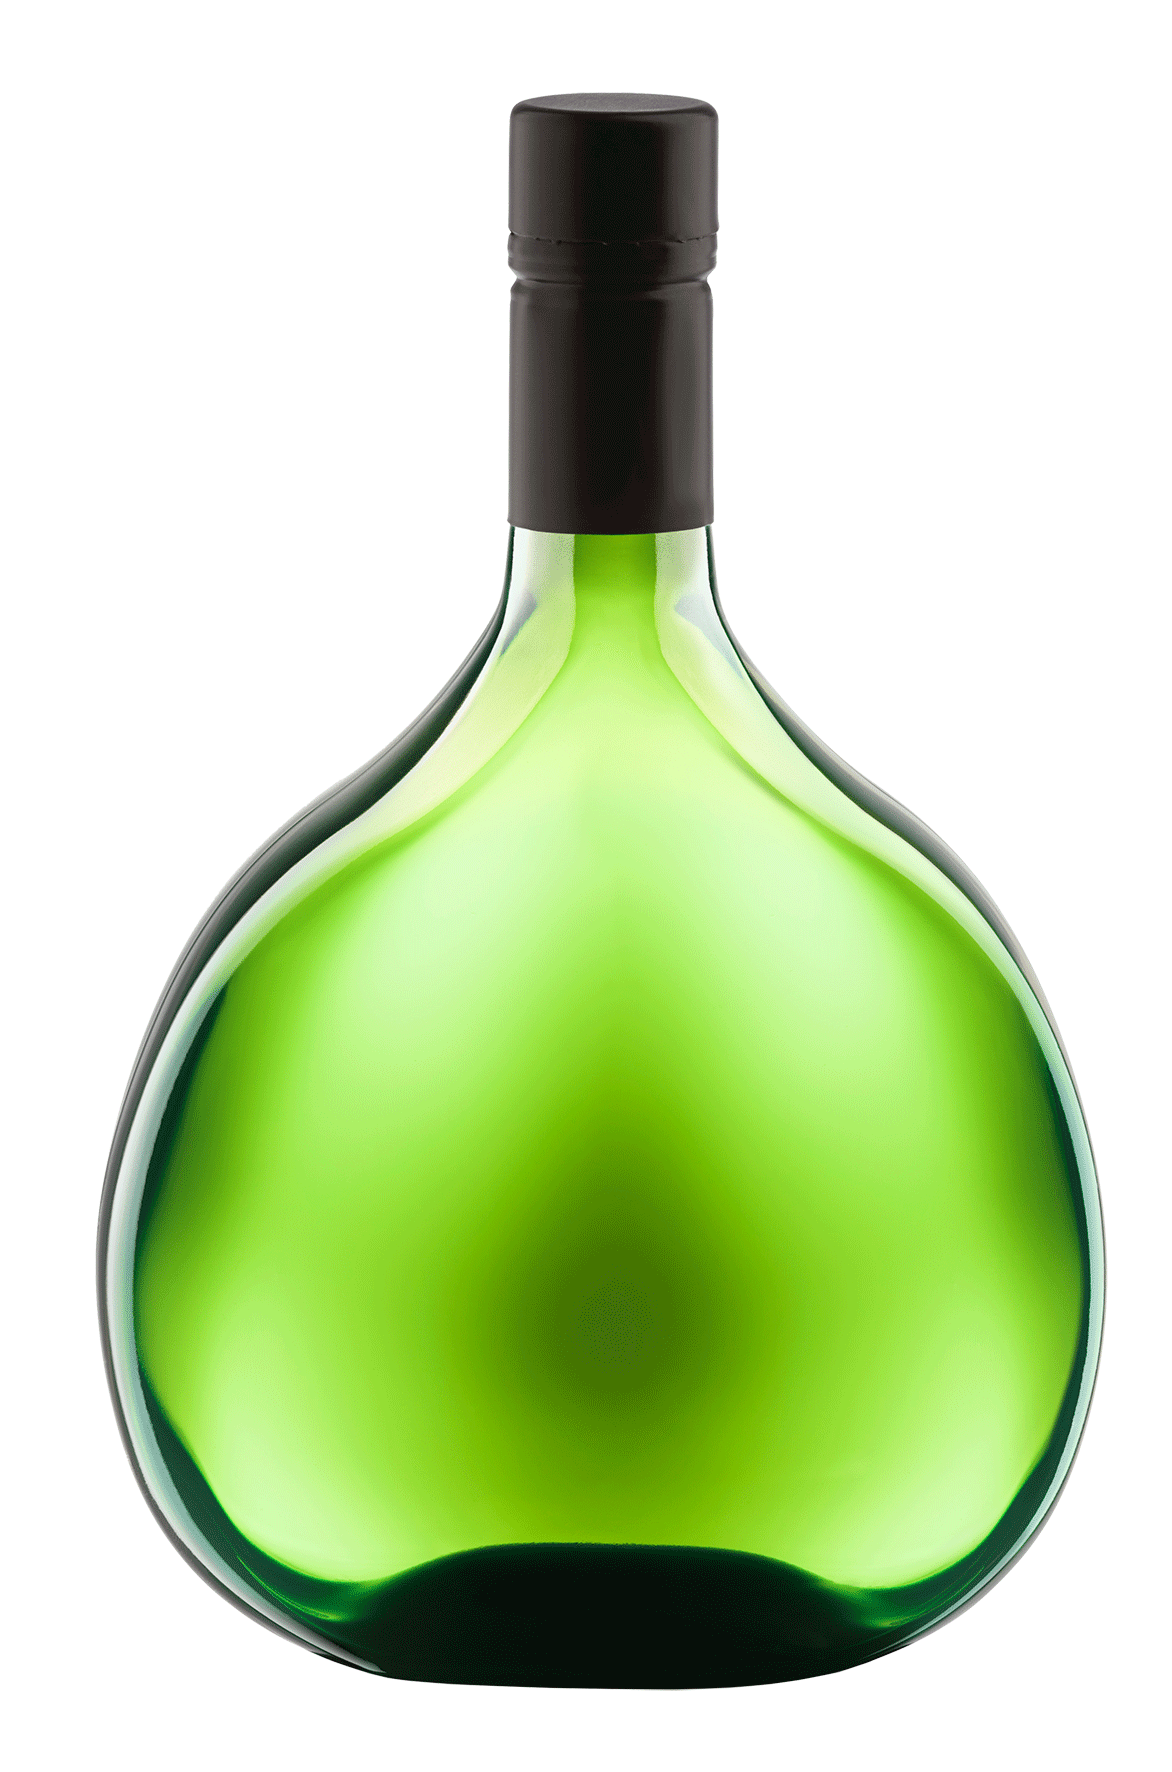 Foto einer Bocksbeutel Flasche mit Wein hoher Qualität.